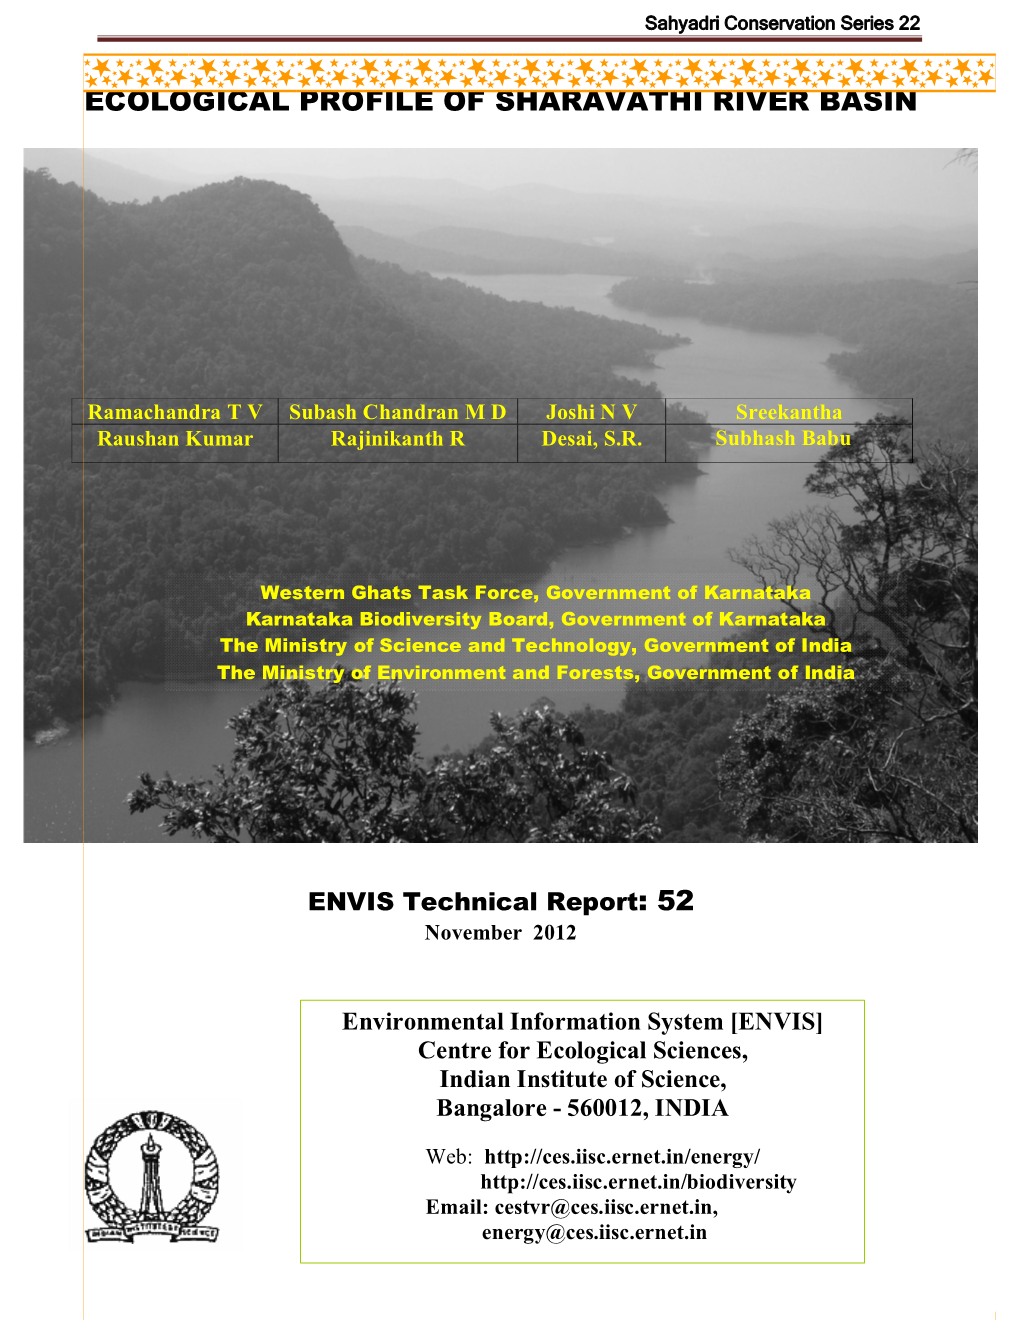 Ecological Profile of Sharavathi River Basin